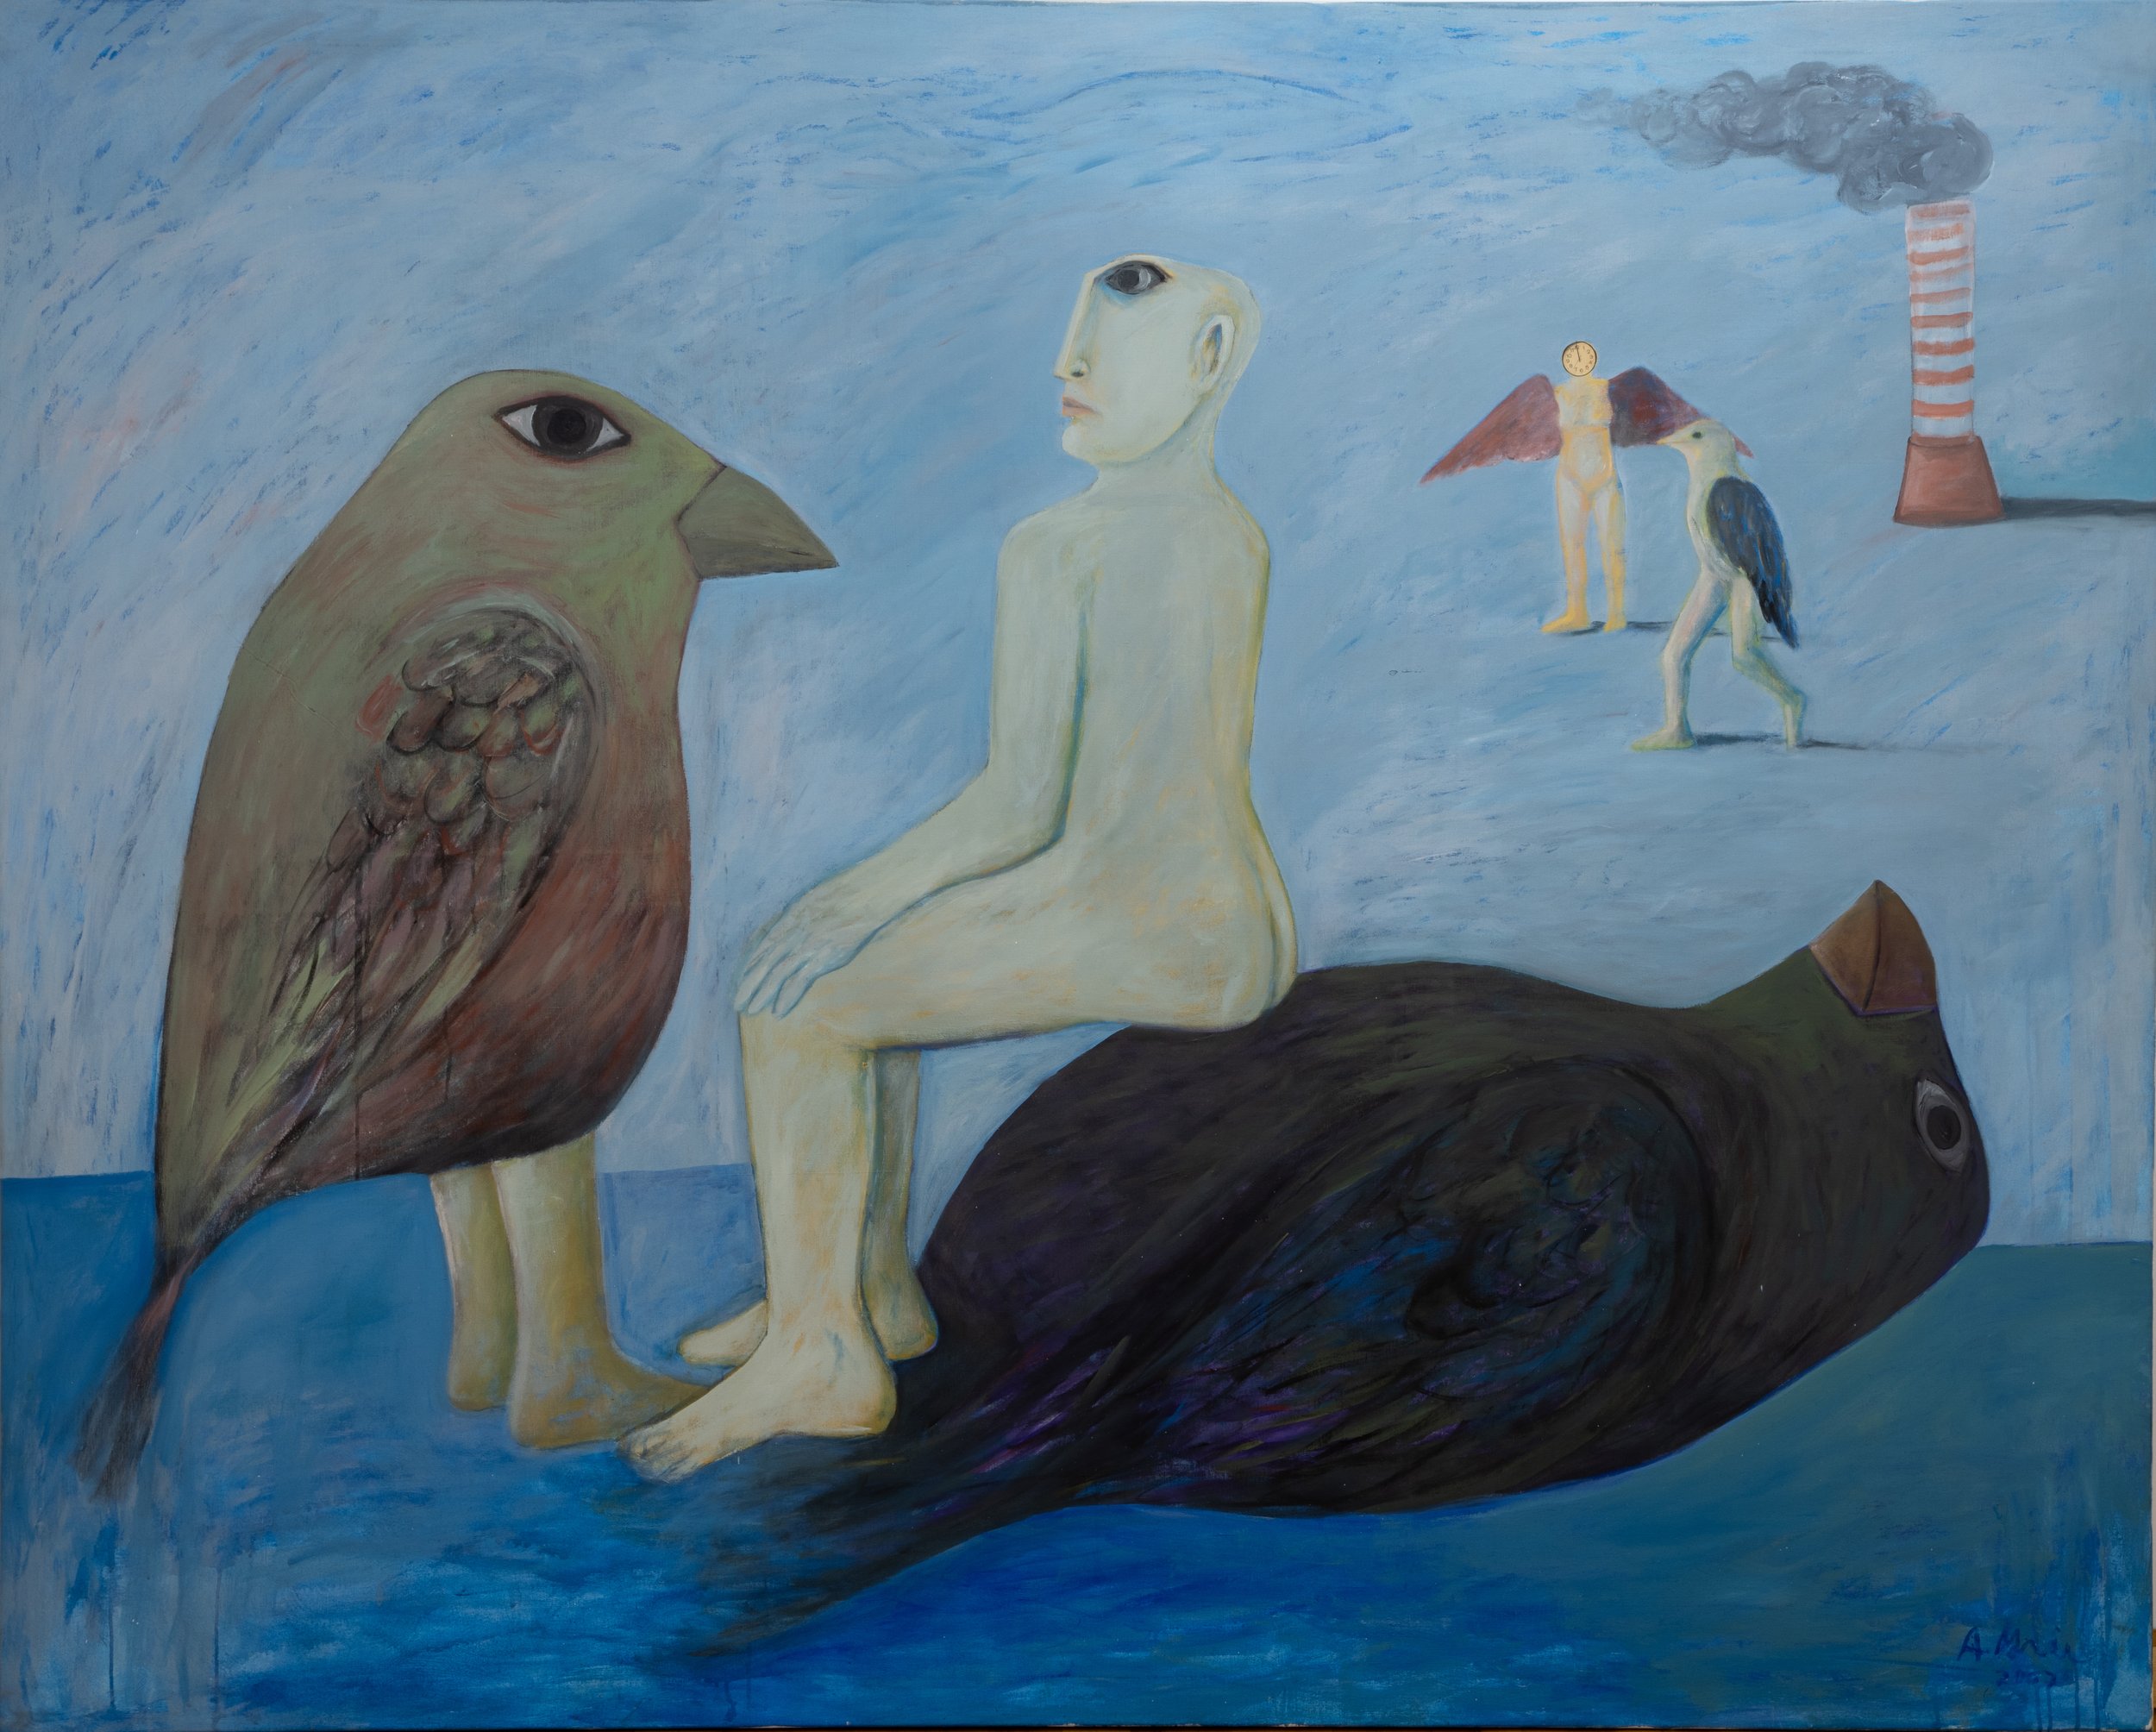  Black Bird II, 2007, Acrylic on canvas, 253 x 203 cm 